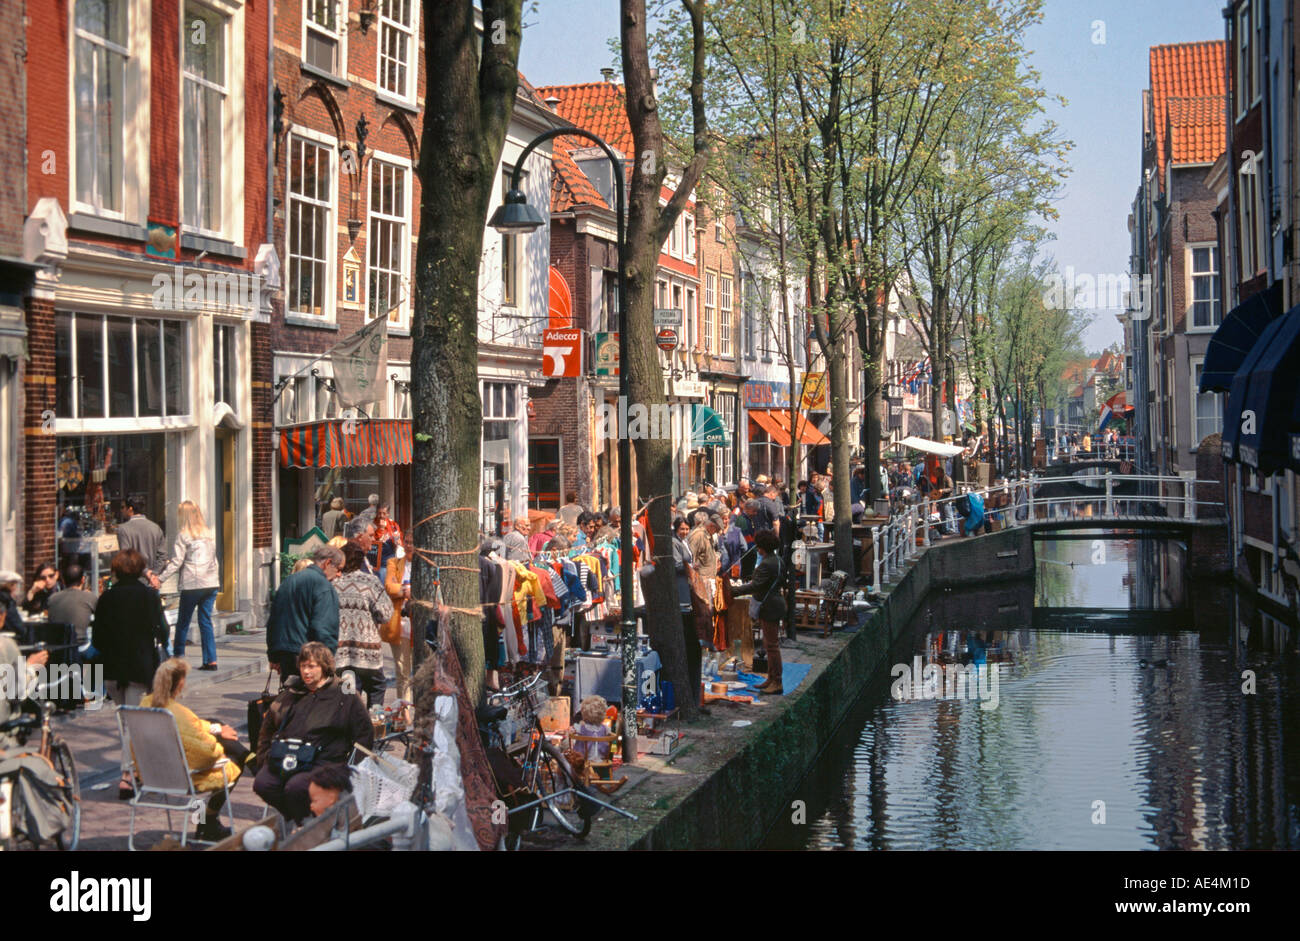 Niederlande Delft Altstadt Flohmarkt un einer Gracht Foto de stock